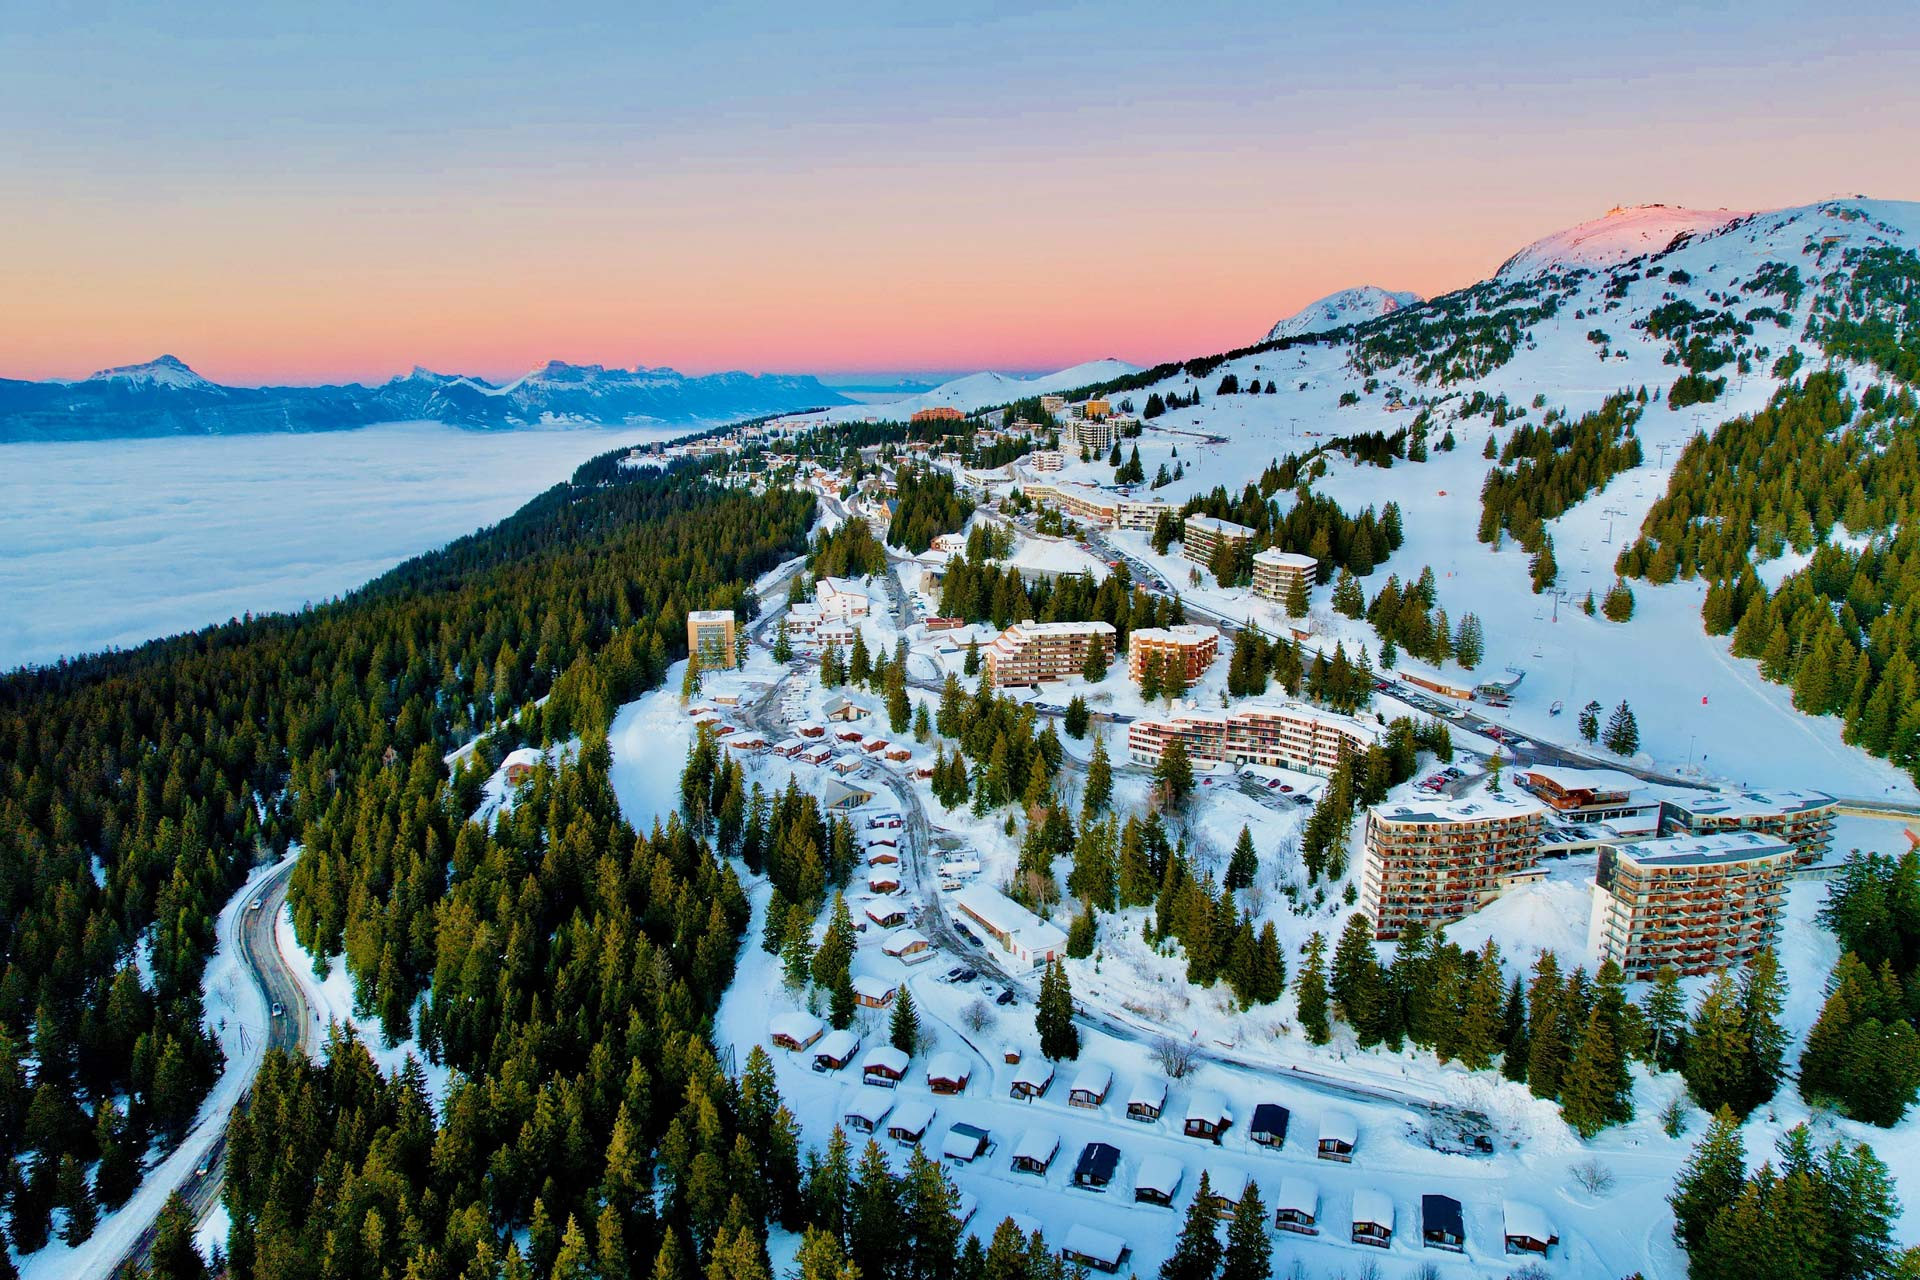 Chamrousse vacances aventure sportive et bien-être montagne hiver station ski montagne grenoble isère lyon rhone alpes france